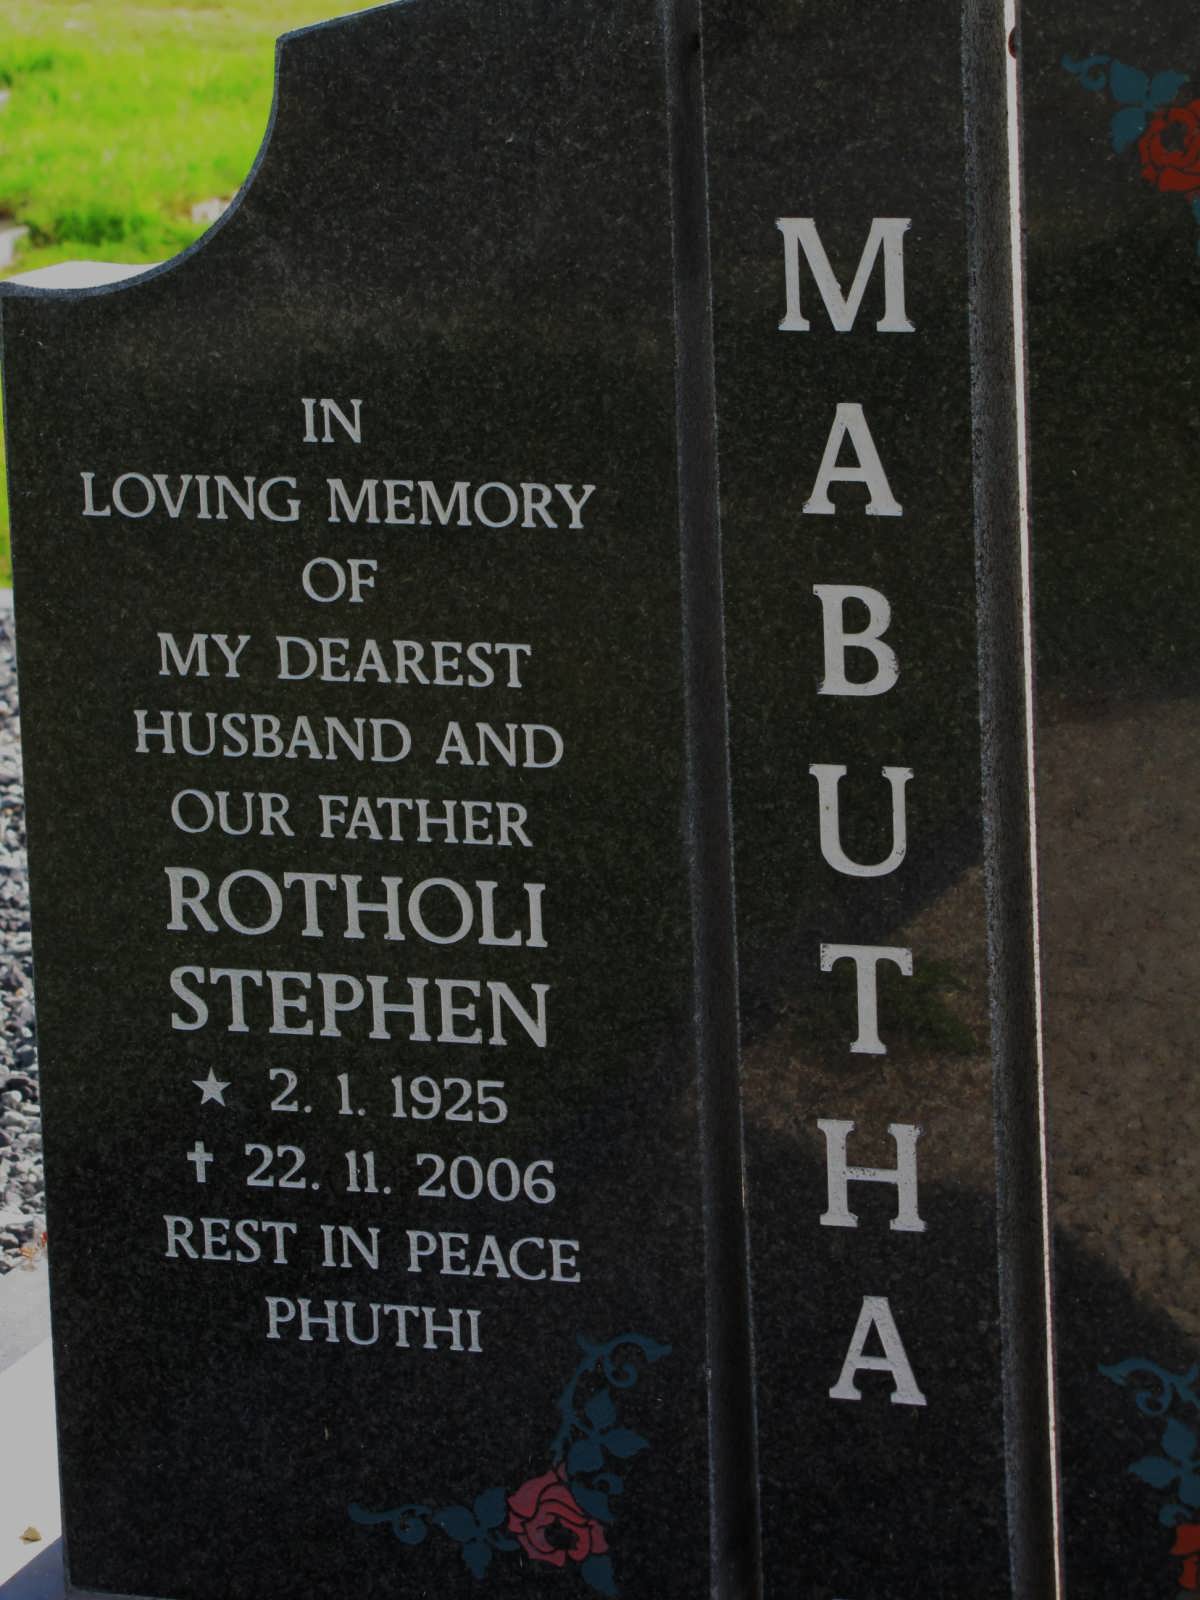 MABUTHA Rotholi Stephen 1925-2006